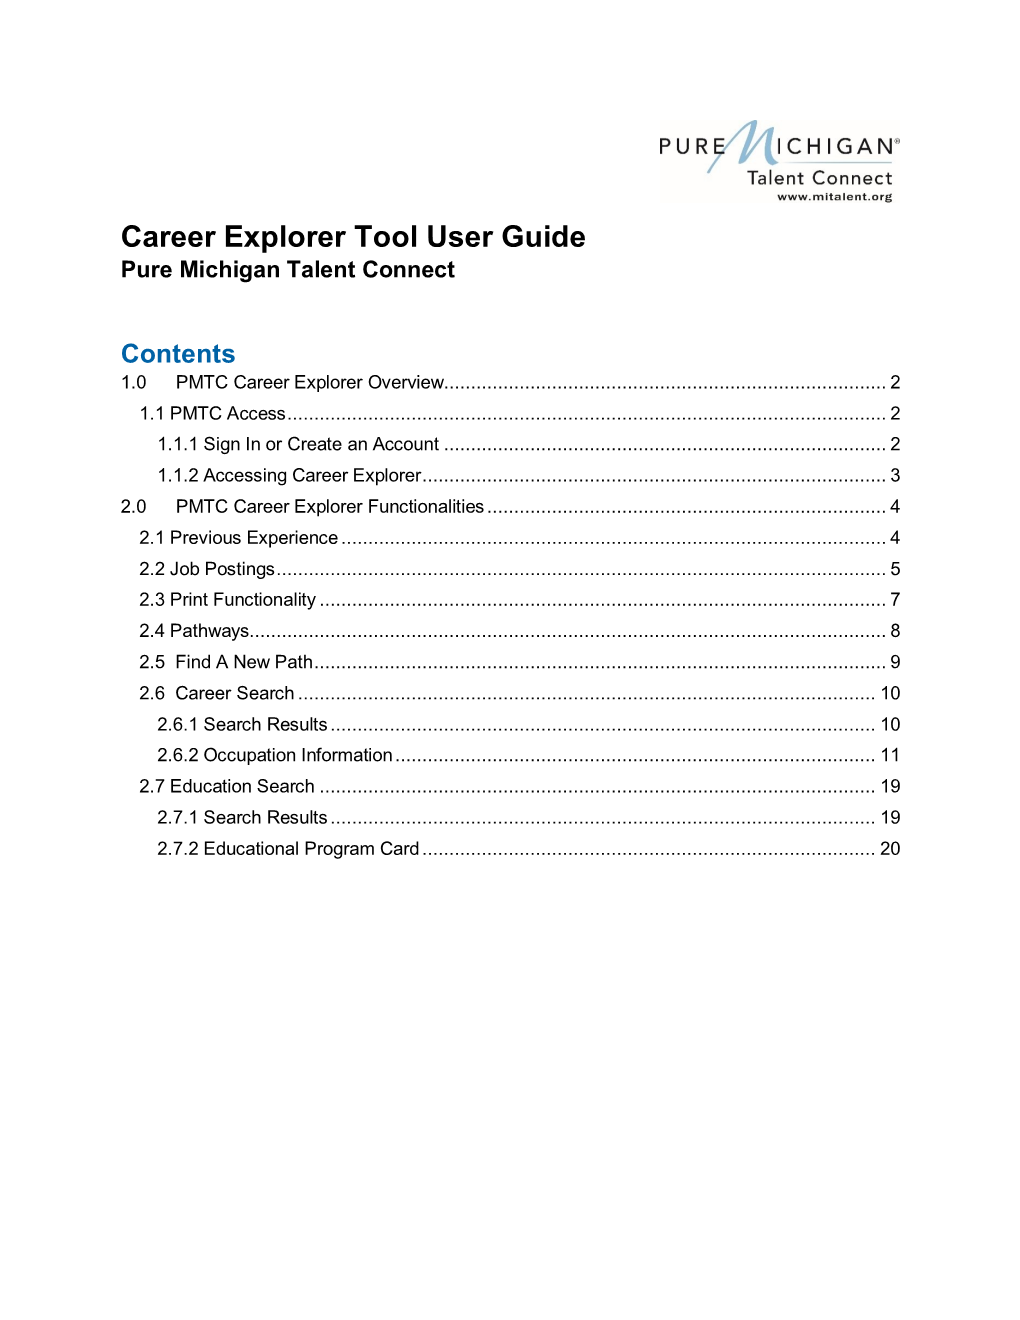 Get Career Explorer Tool User Guide